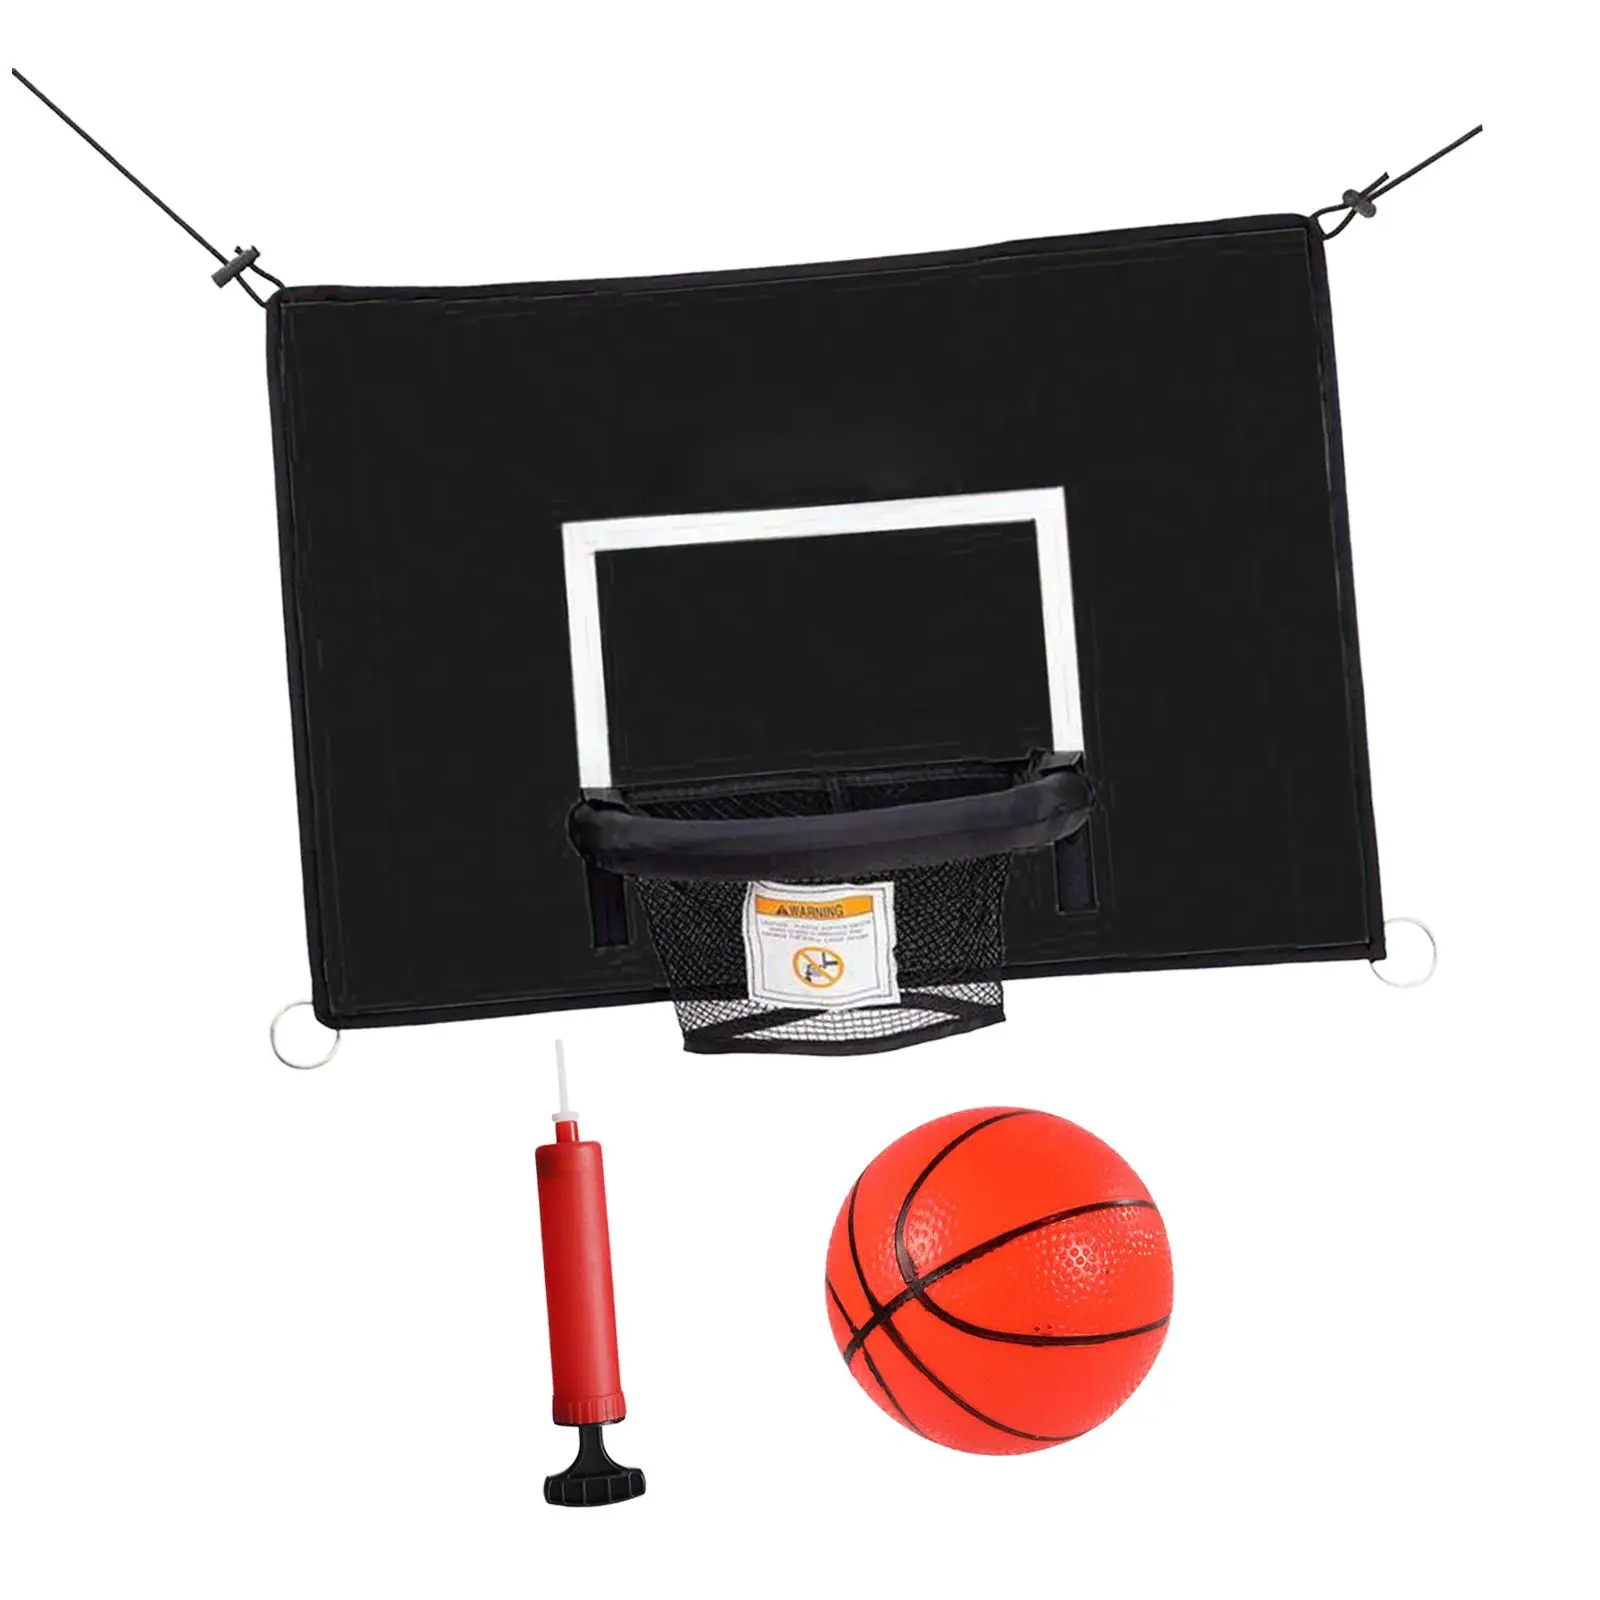 Mini Trambolin basketbol potası Erkek Kız Bağlantı Halatları ile Top Pompası ile Su Geçirmez kurulumu kolay basketbol çerçeve Görüntü 1